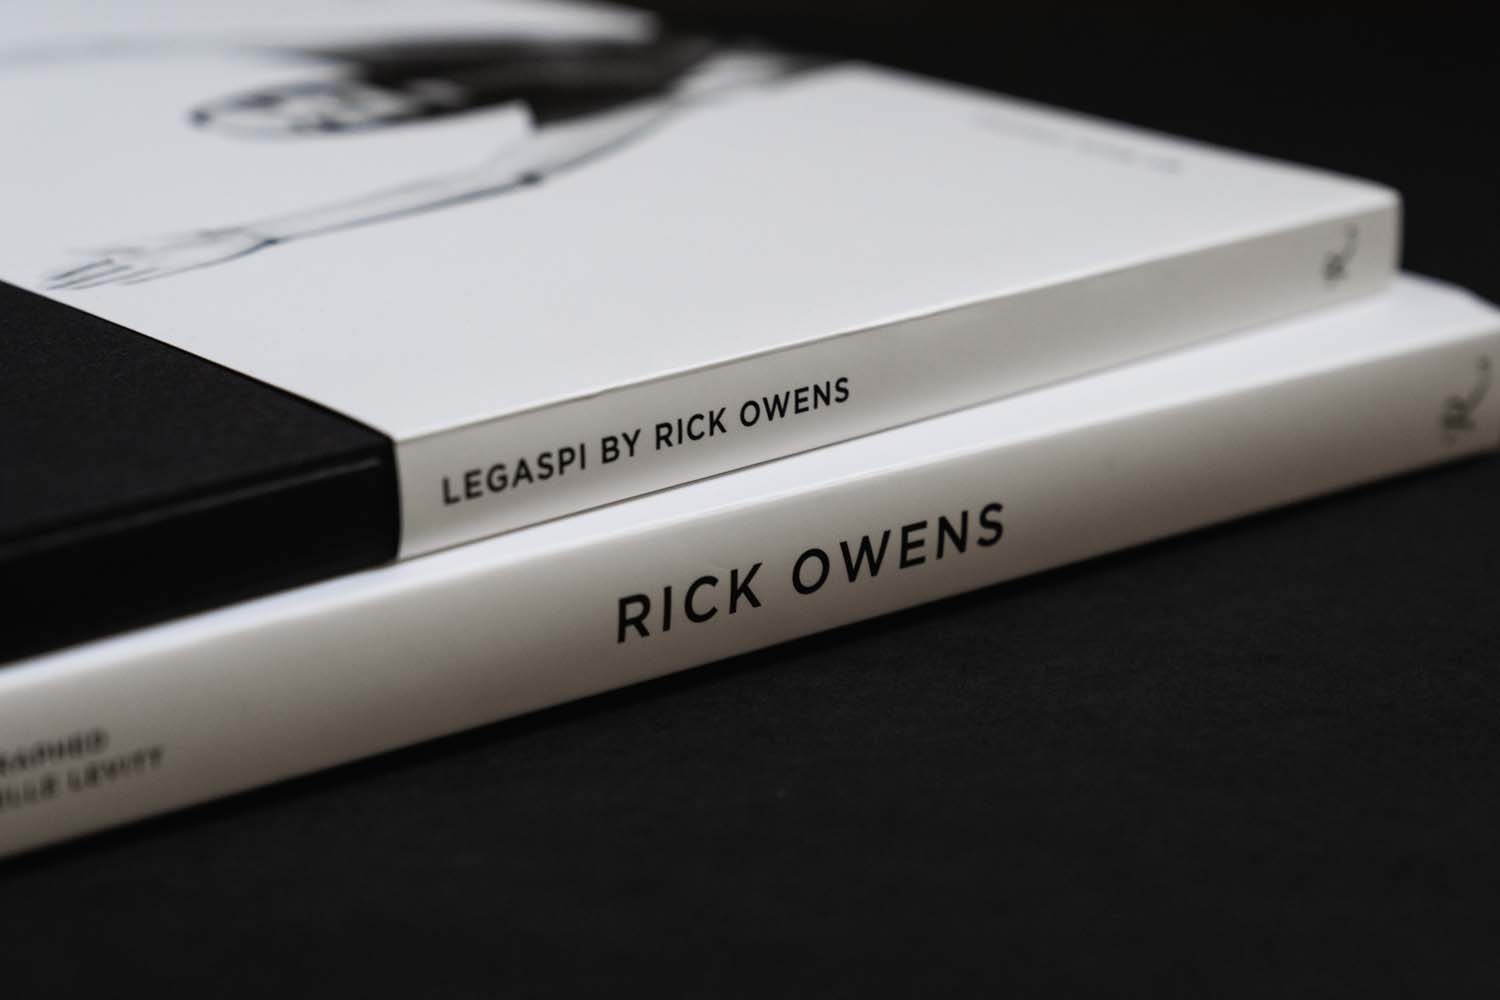 Rick Owens 親編書籍《LEGASPI BY RICK OWENS》正式發行